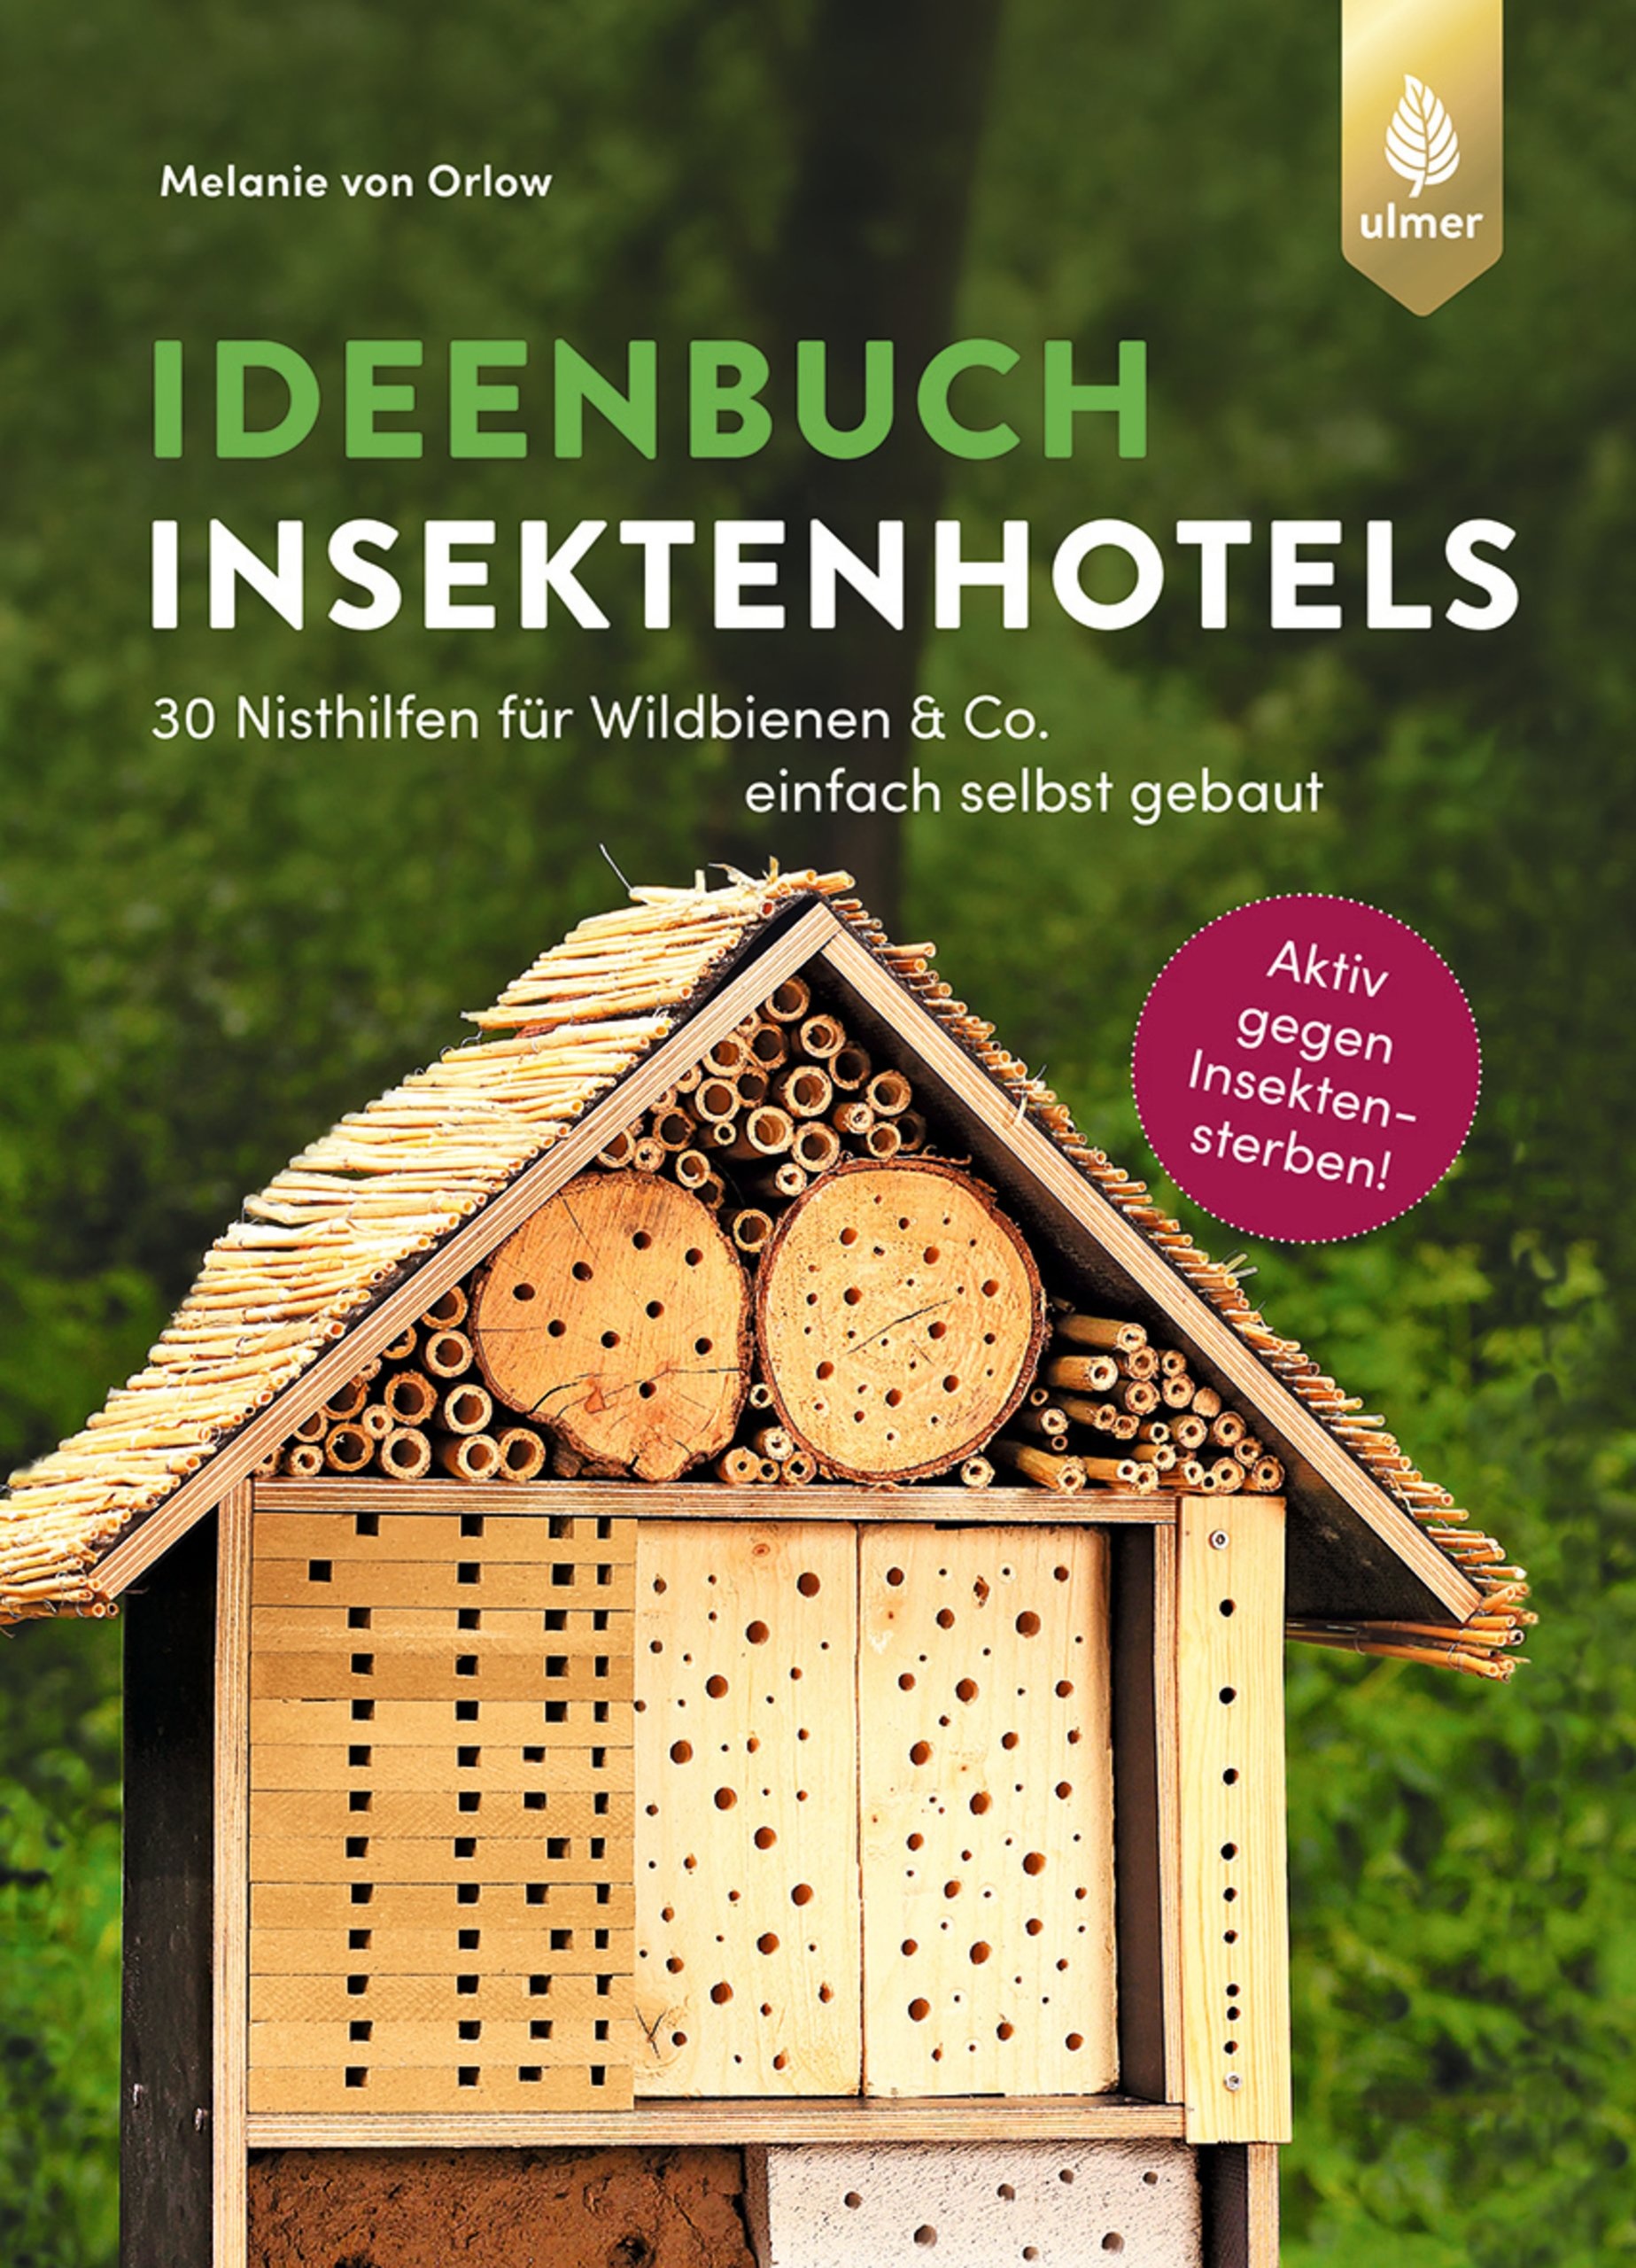 Ideenbuch Insektenhotels – 30 Nisthilfen einfach selbst gebaut